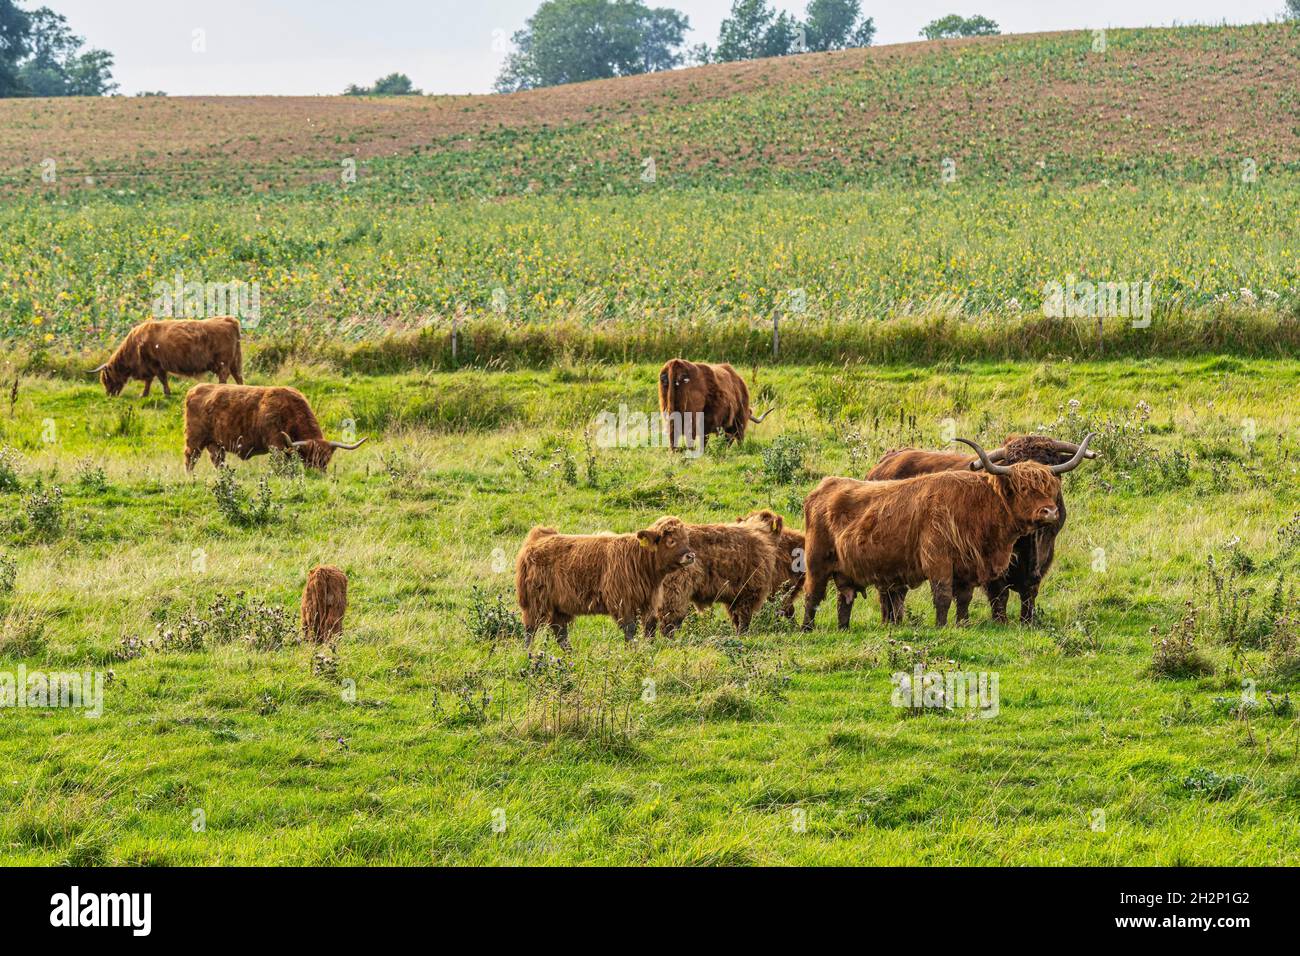 Mandria di vacche Highlander, una razza di bovini originari della Scozia, pascolo. Danimarca, Europa Foto Stock